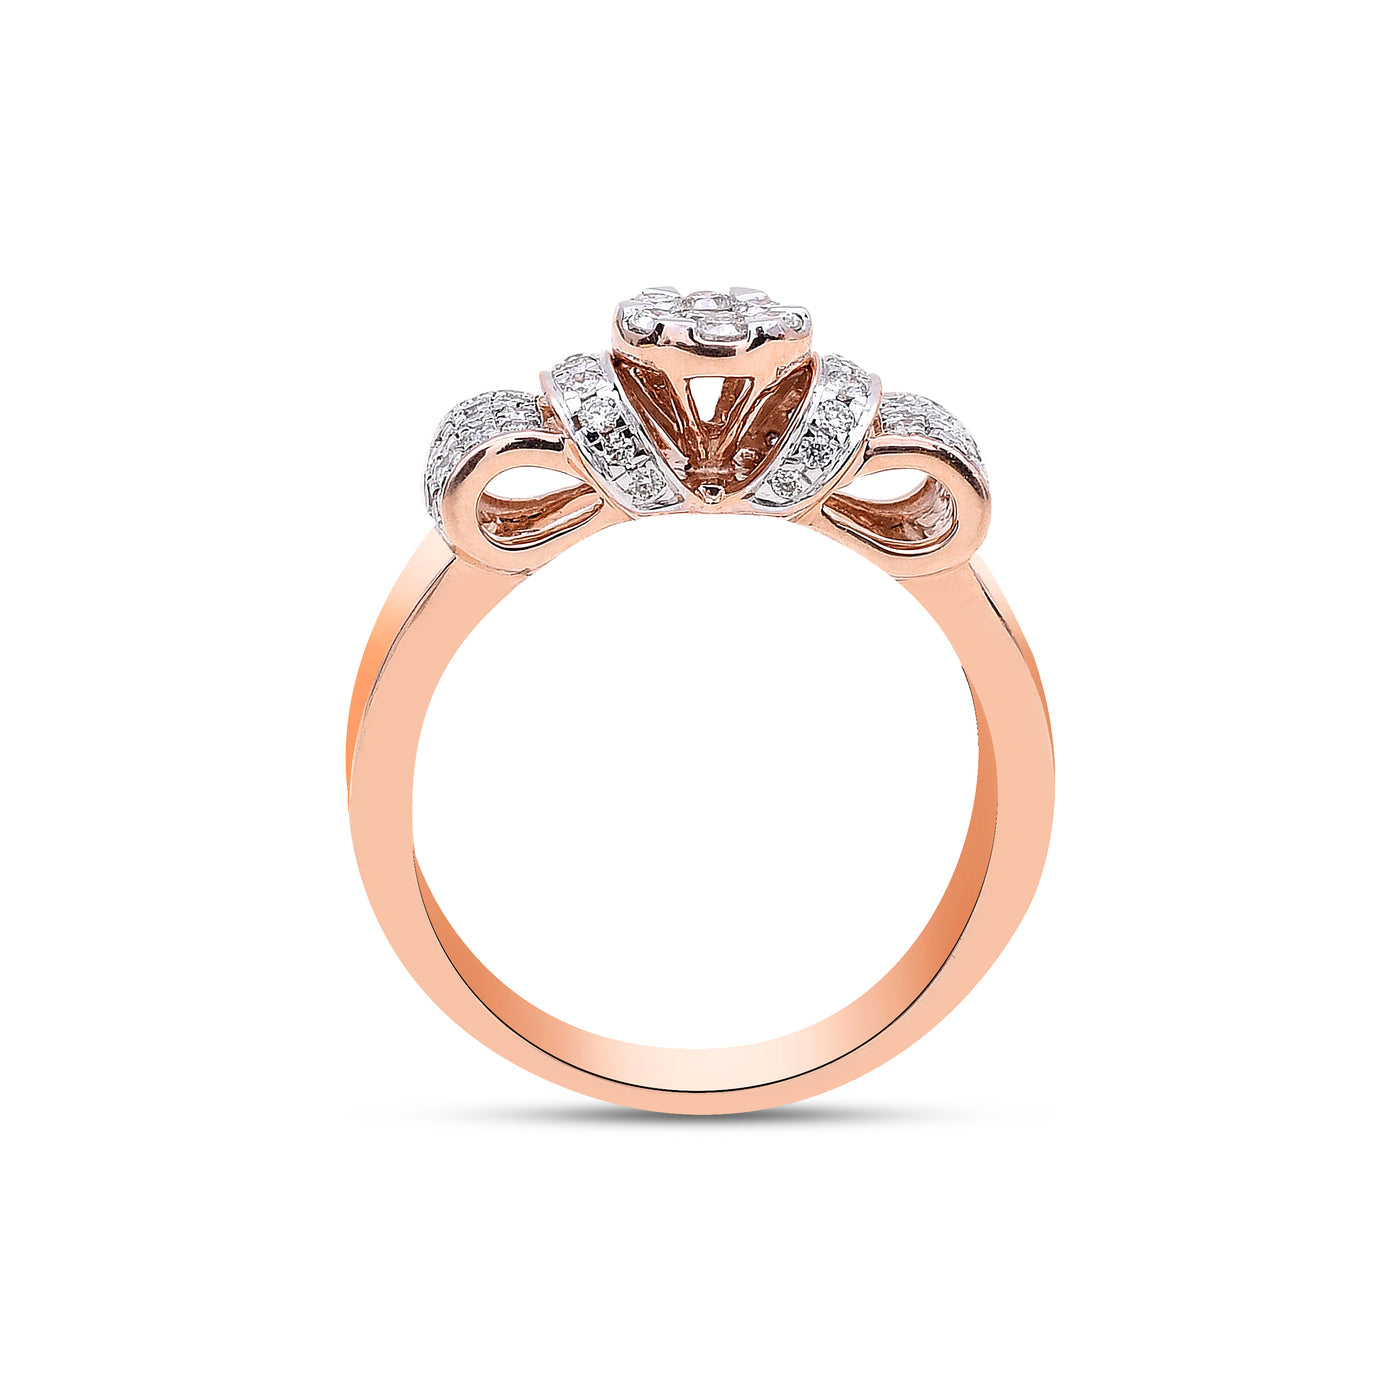 The Rose Ribbon Diamond Ring